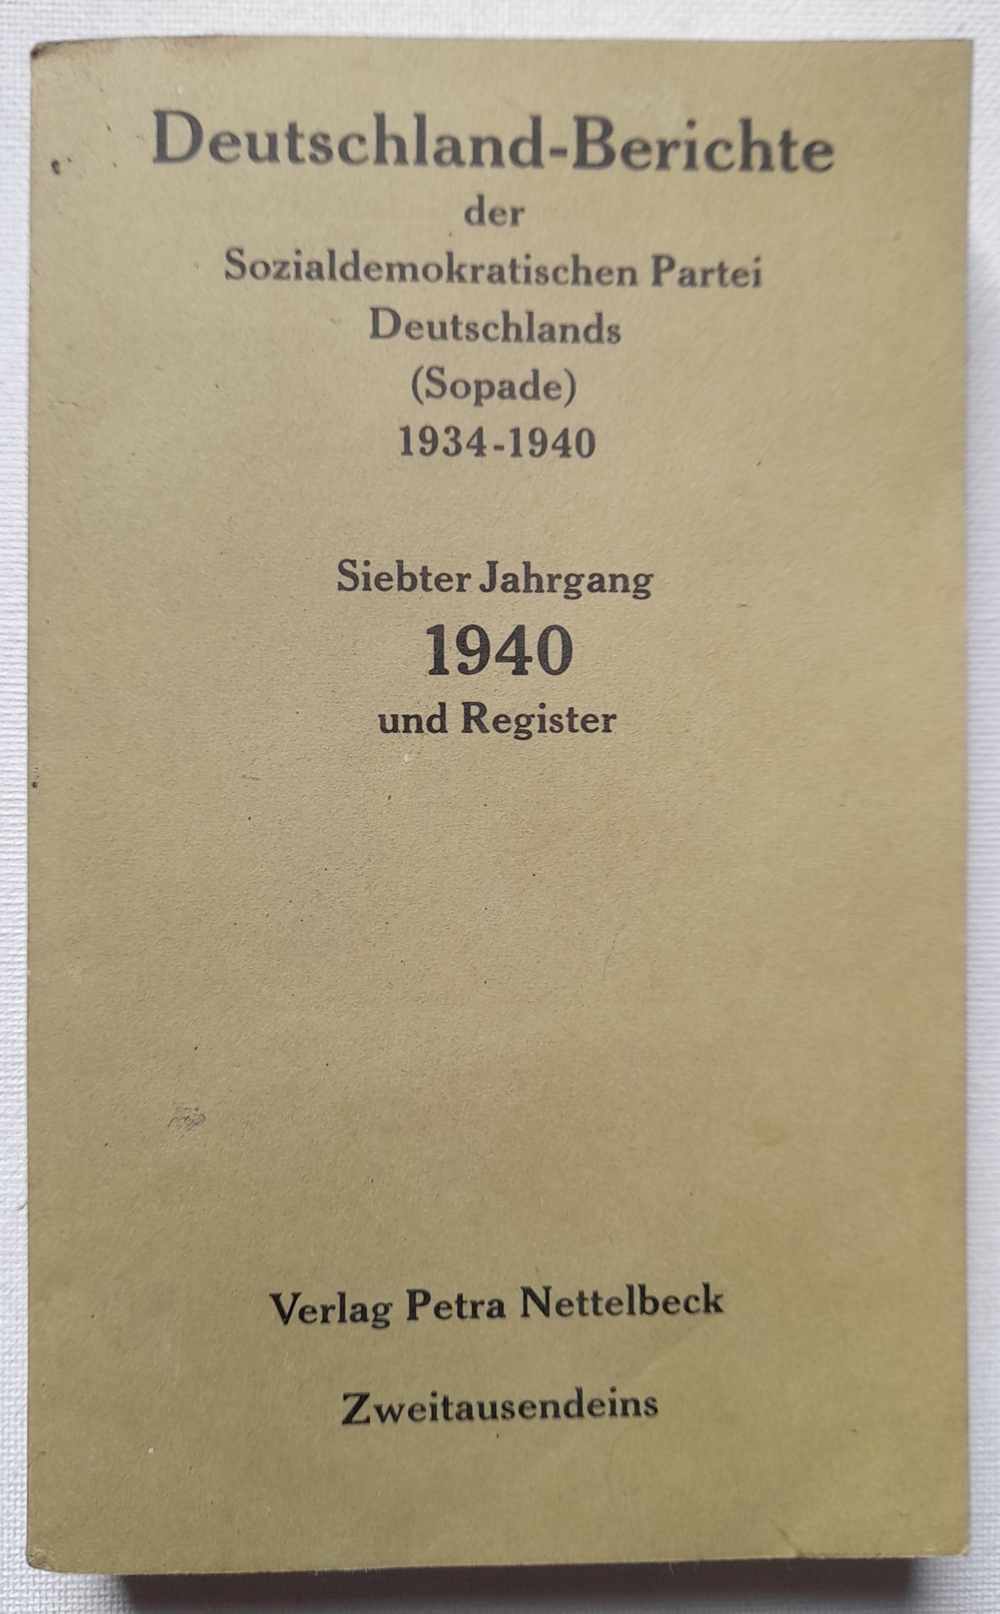 Deutschlandberichte der Sozialdemokratischen Partei (Sopade) Siebter Jahrgang 1940